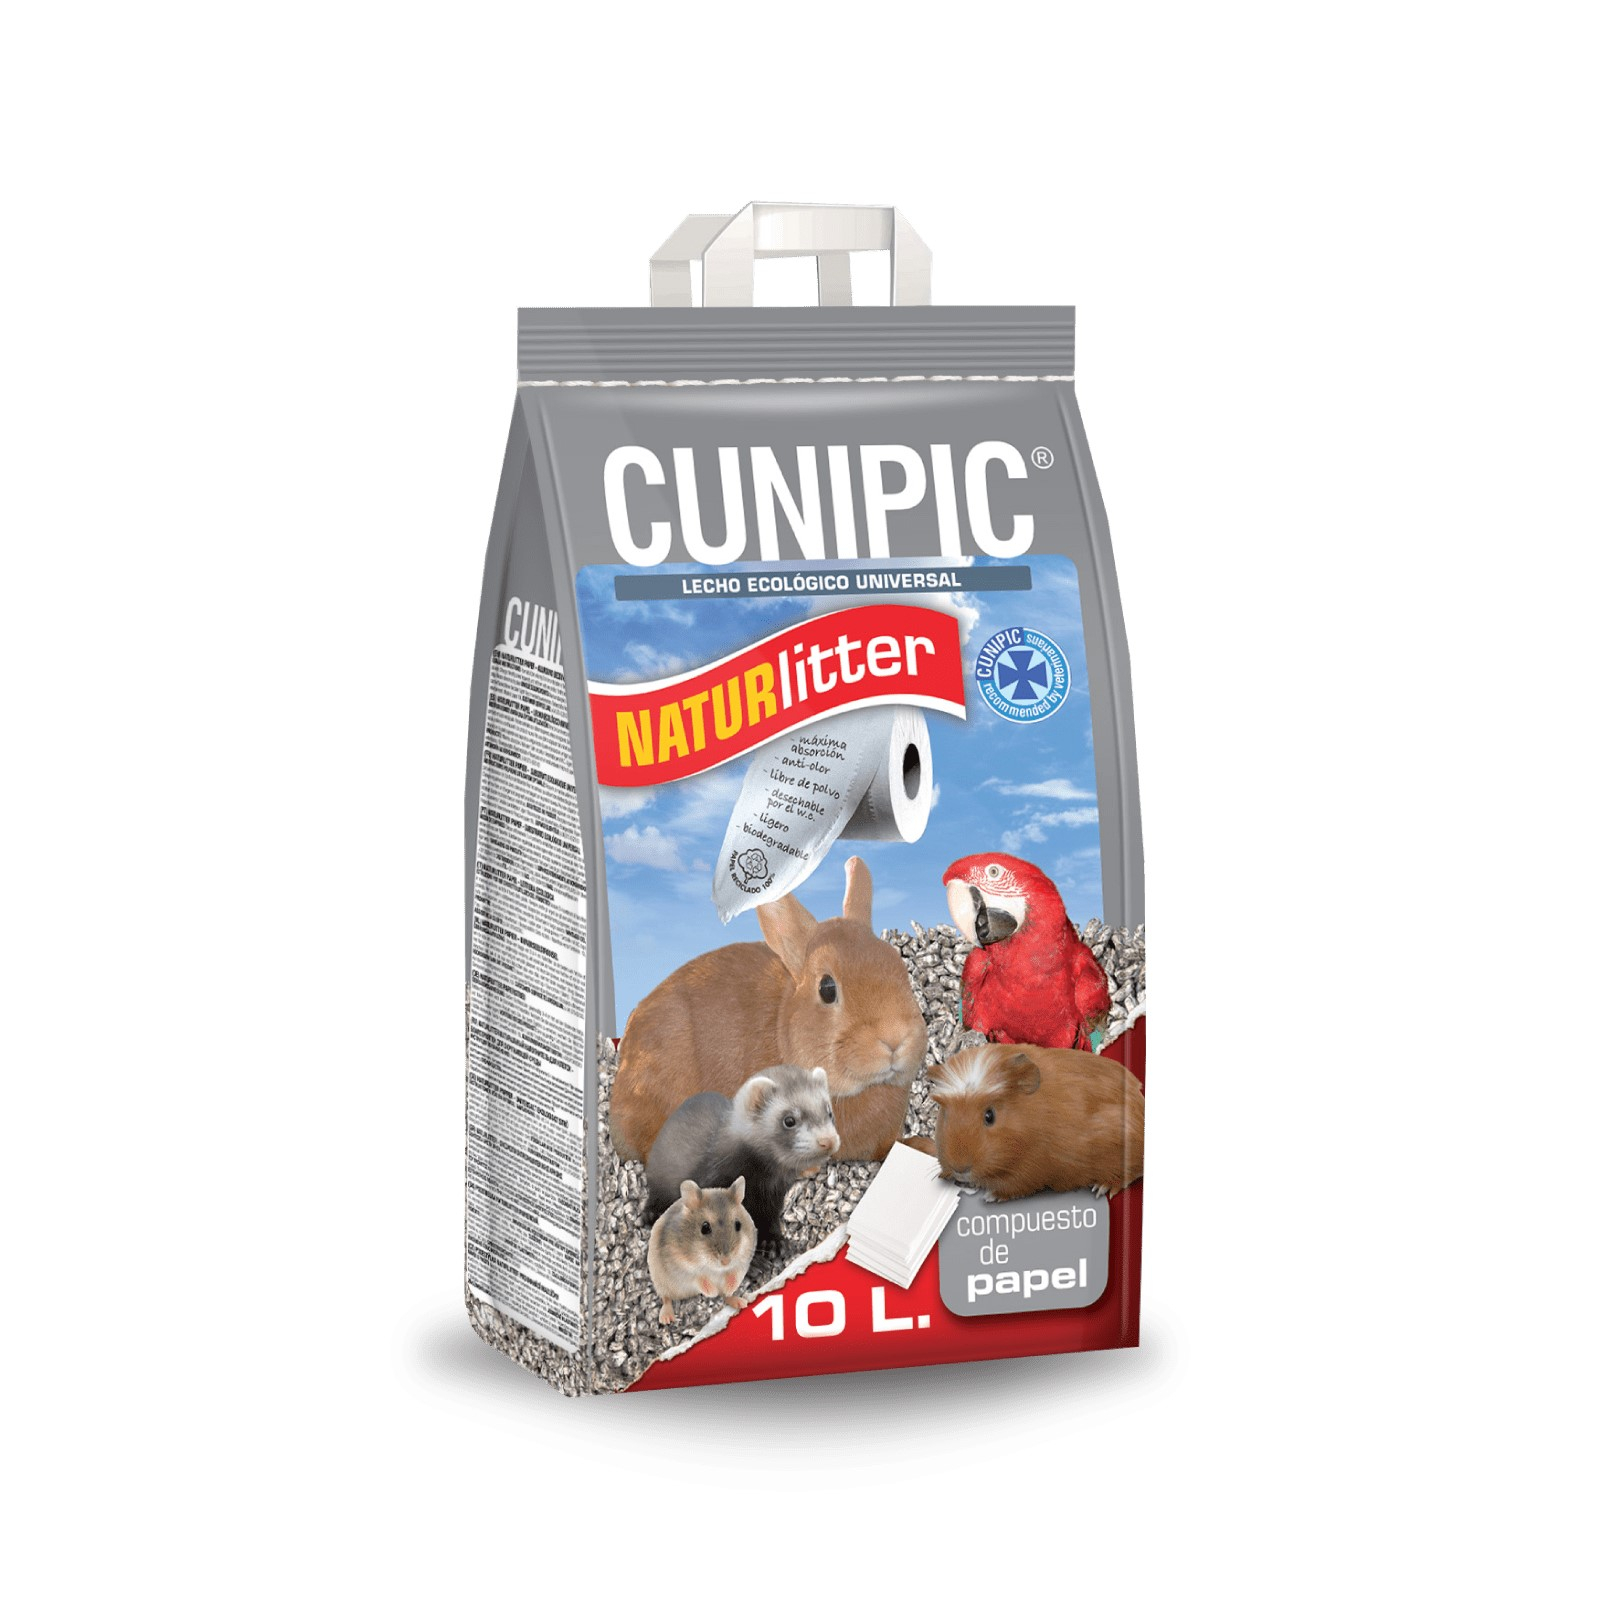 Cunipic Naturlitter Papier Substrato absorvente para pequenos animais e coelhos